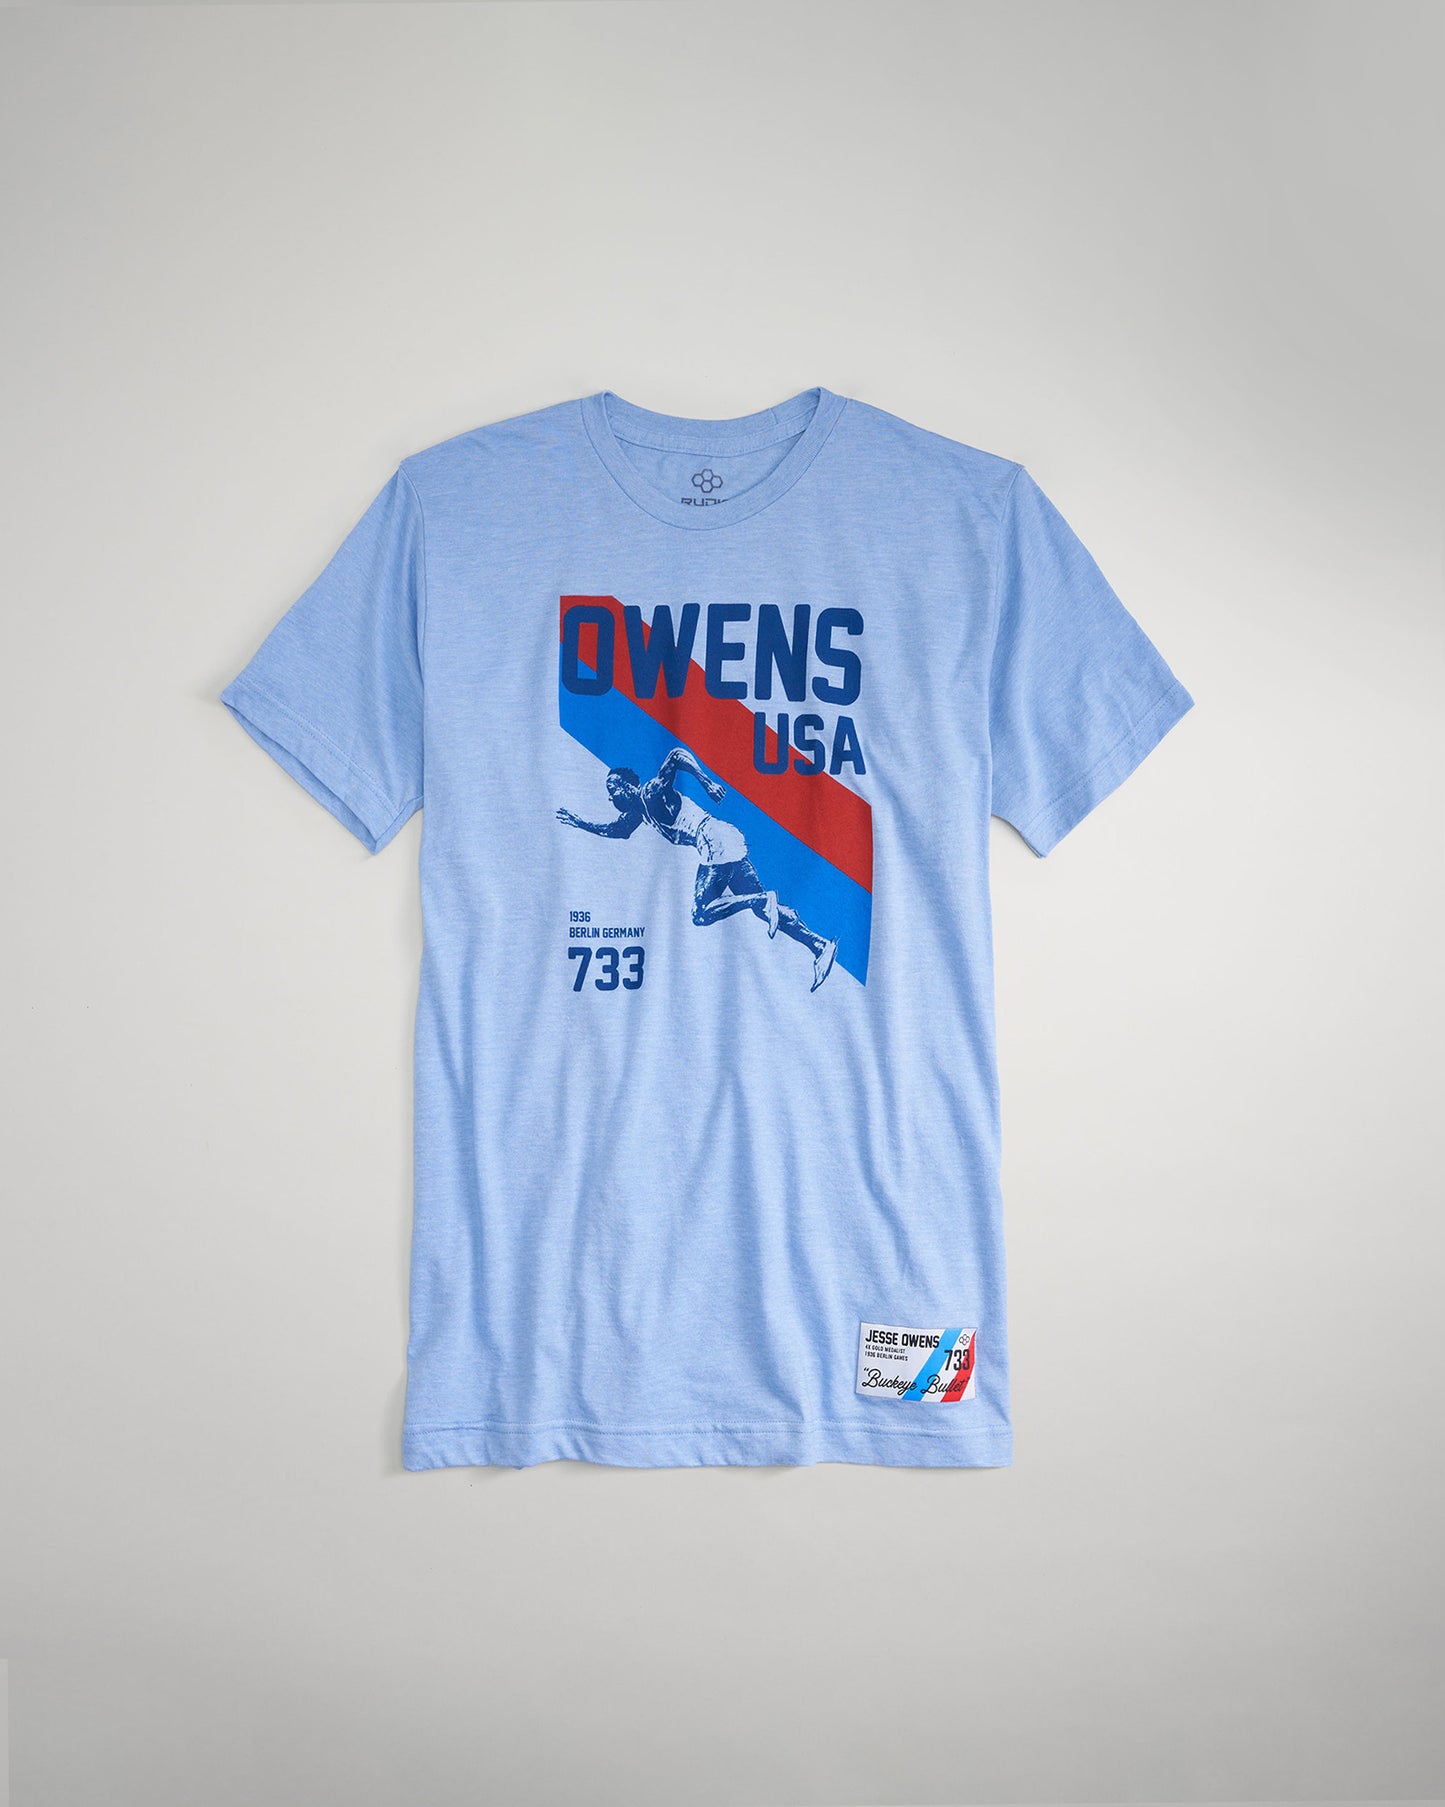 Jesse Owens 733 USA T-Shirt